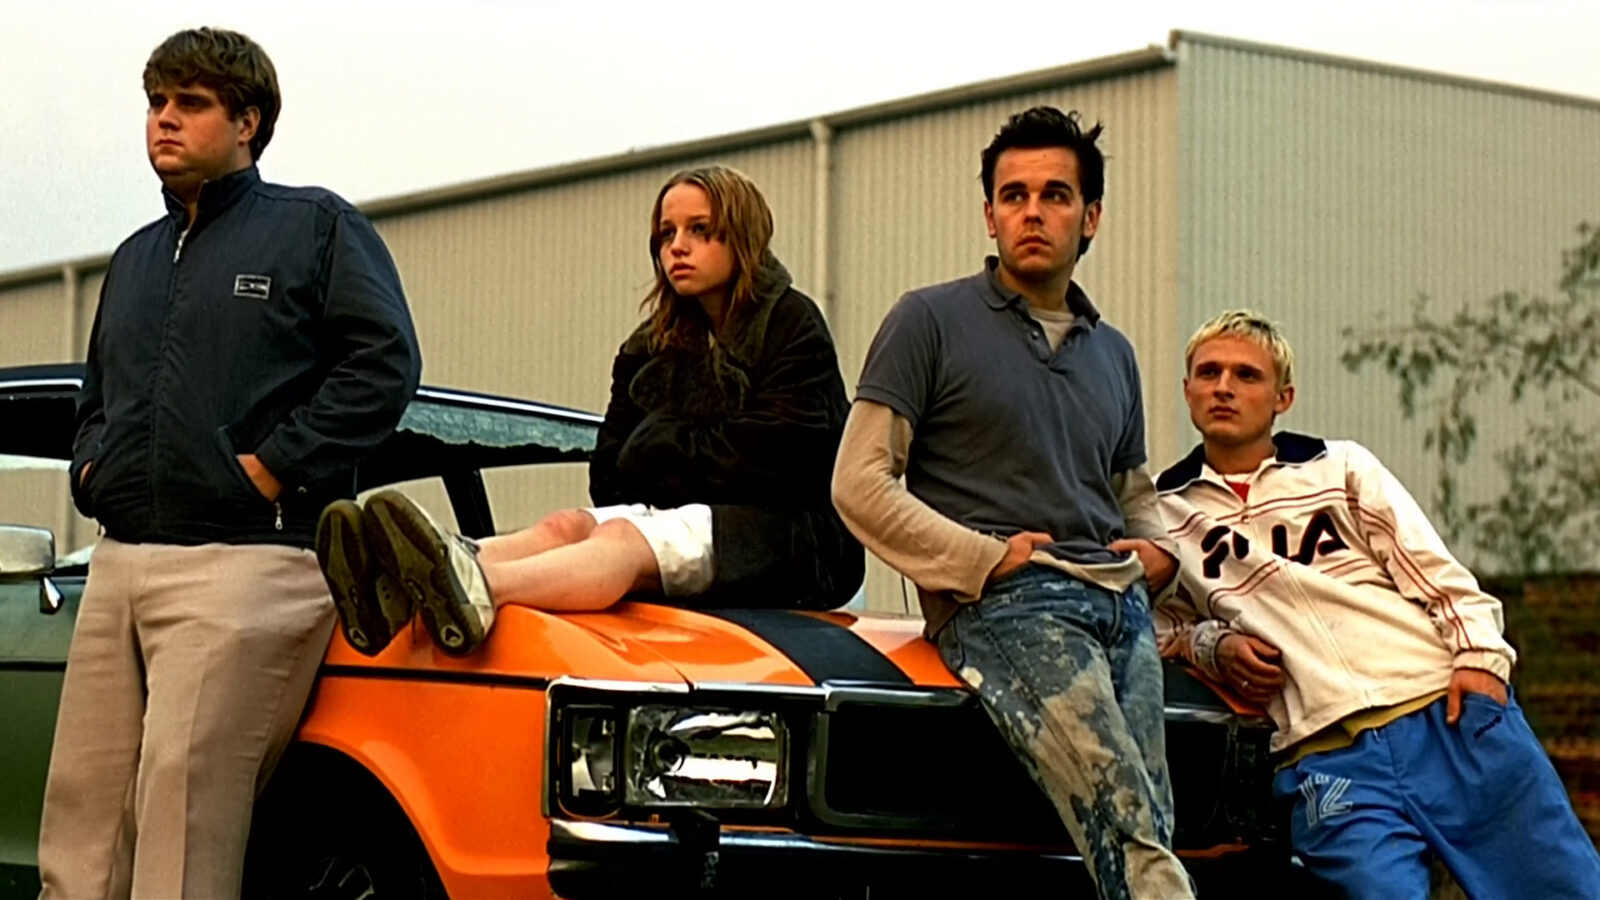 Filmstill aus Absolute Giganten. An einem orangenen Auto lehnen drei junge Männer. Auf der Motorhaube sitzt ein Mädchen.